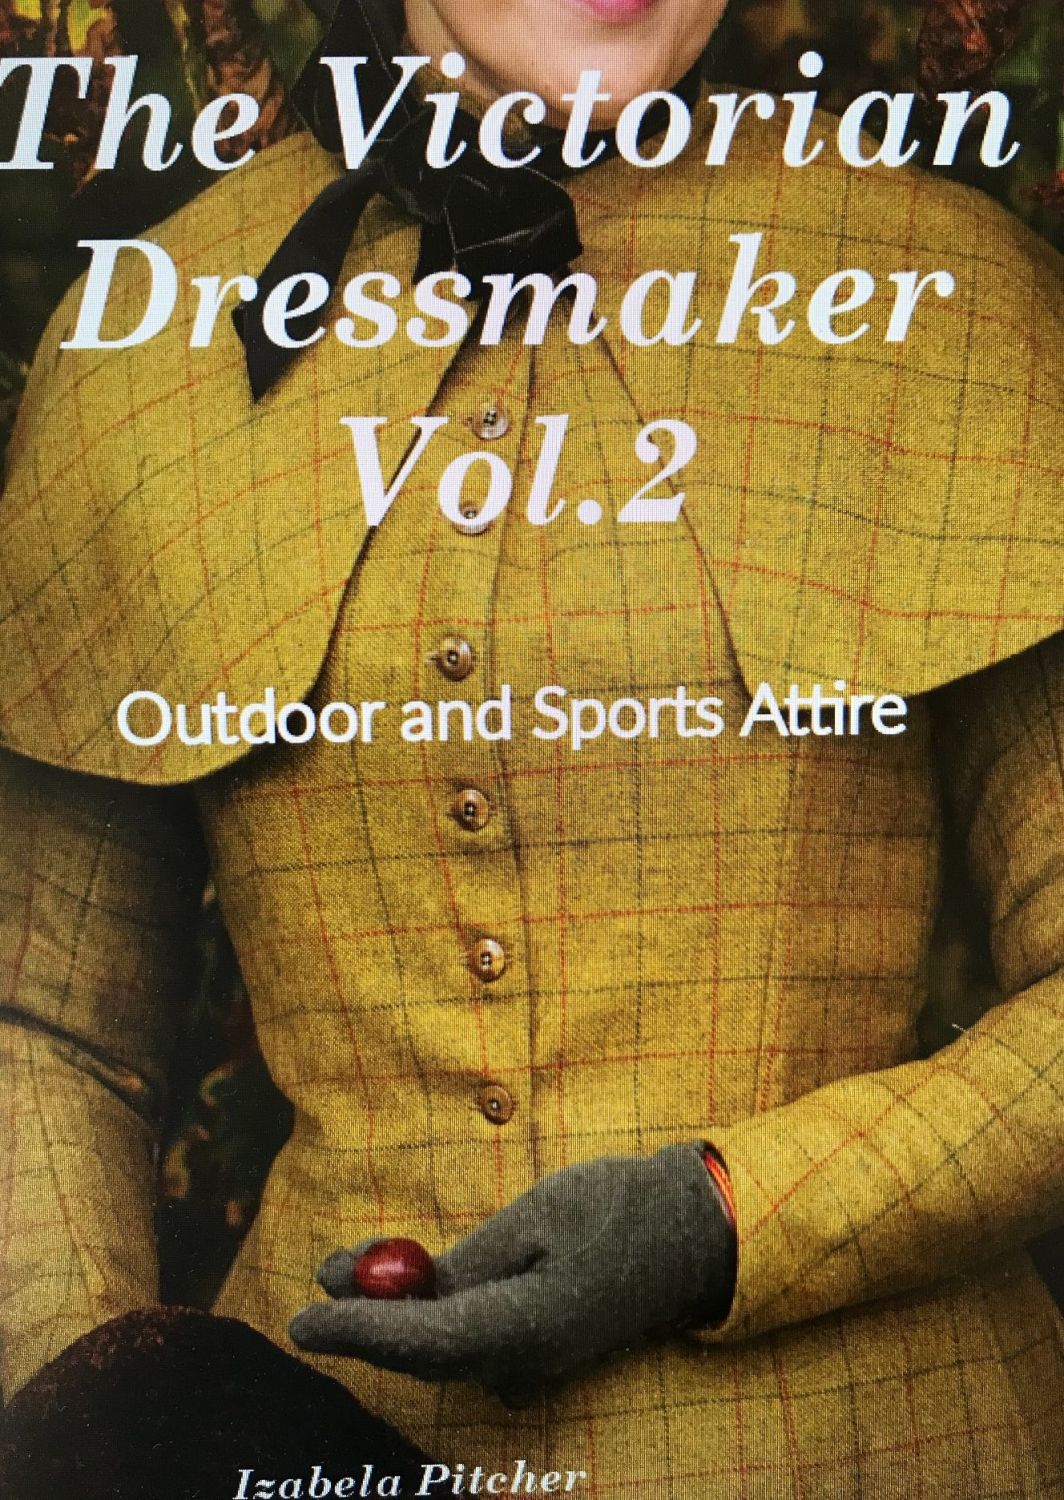 The　book　Dressmaker　Victorian　vol2